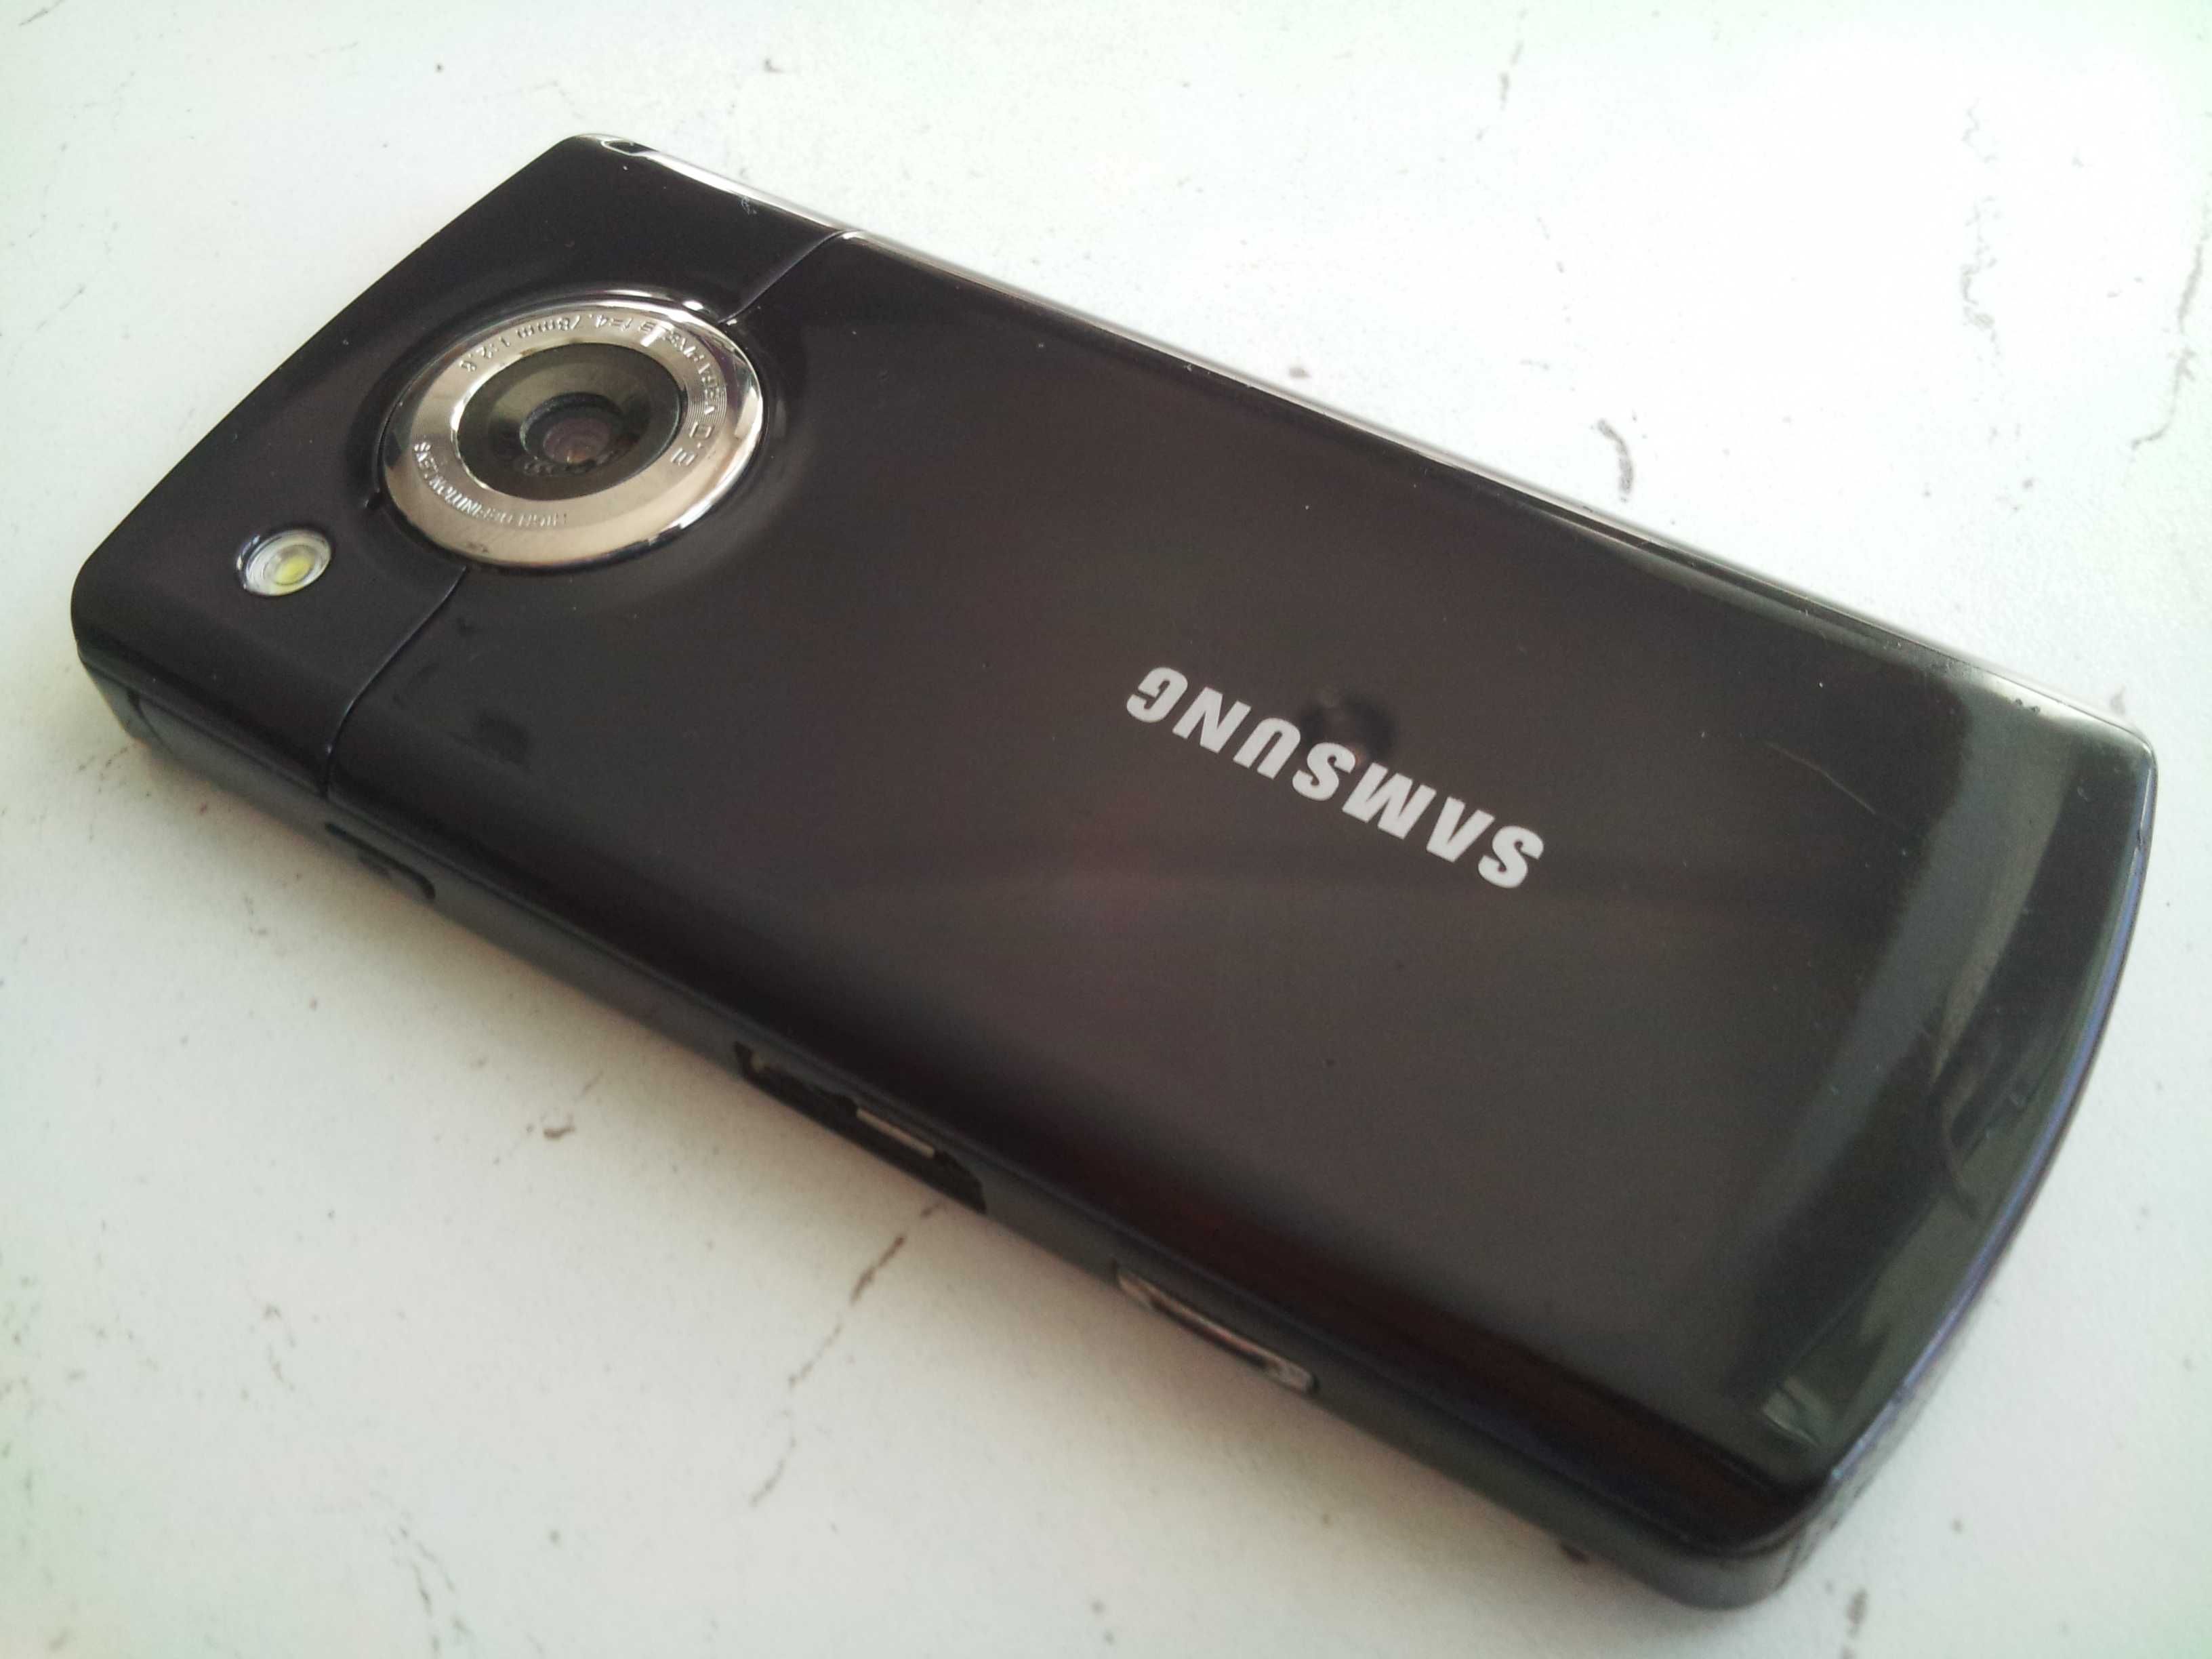 Samsung HD i8910 Корея.